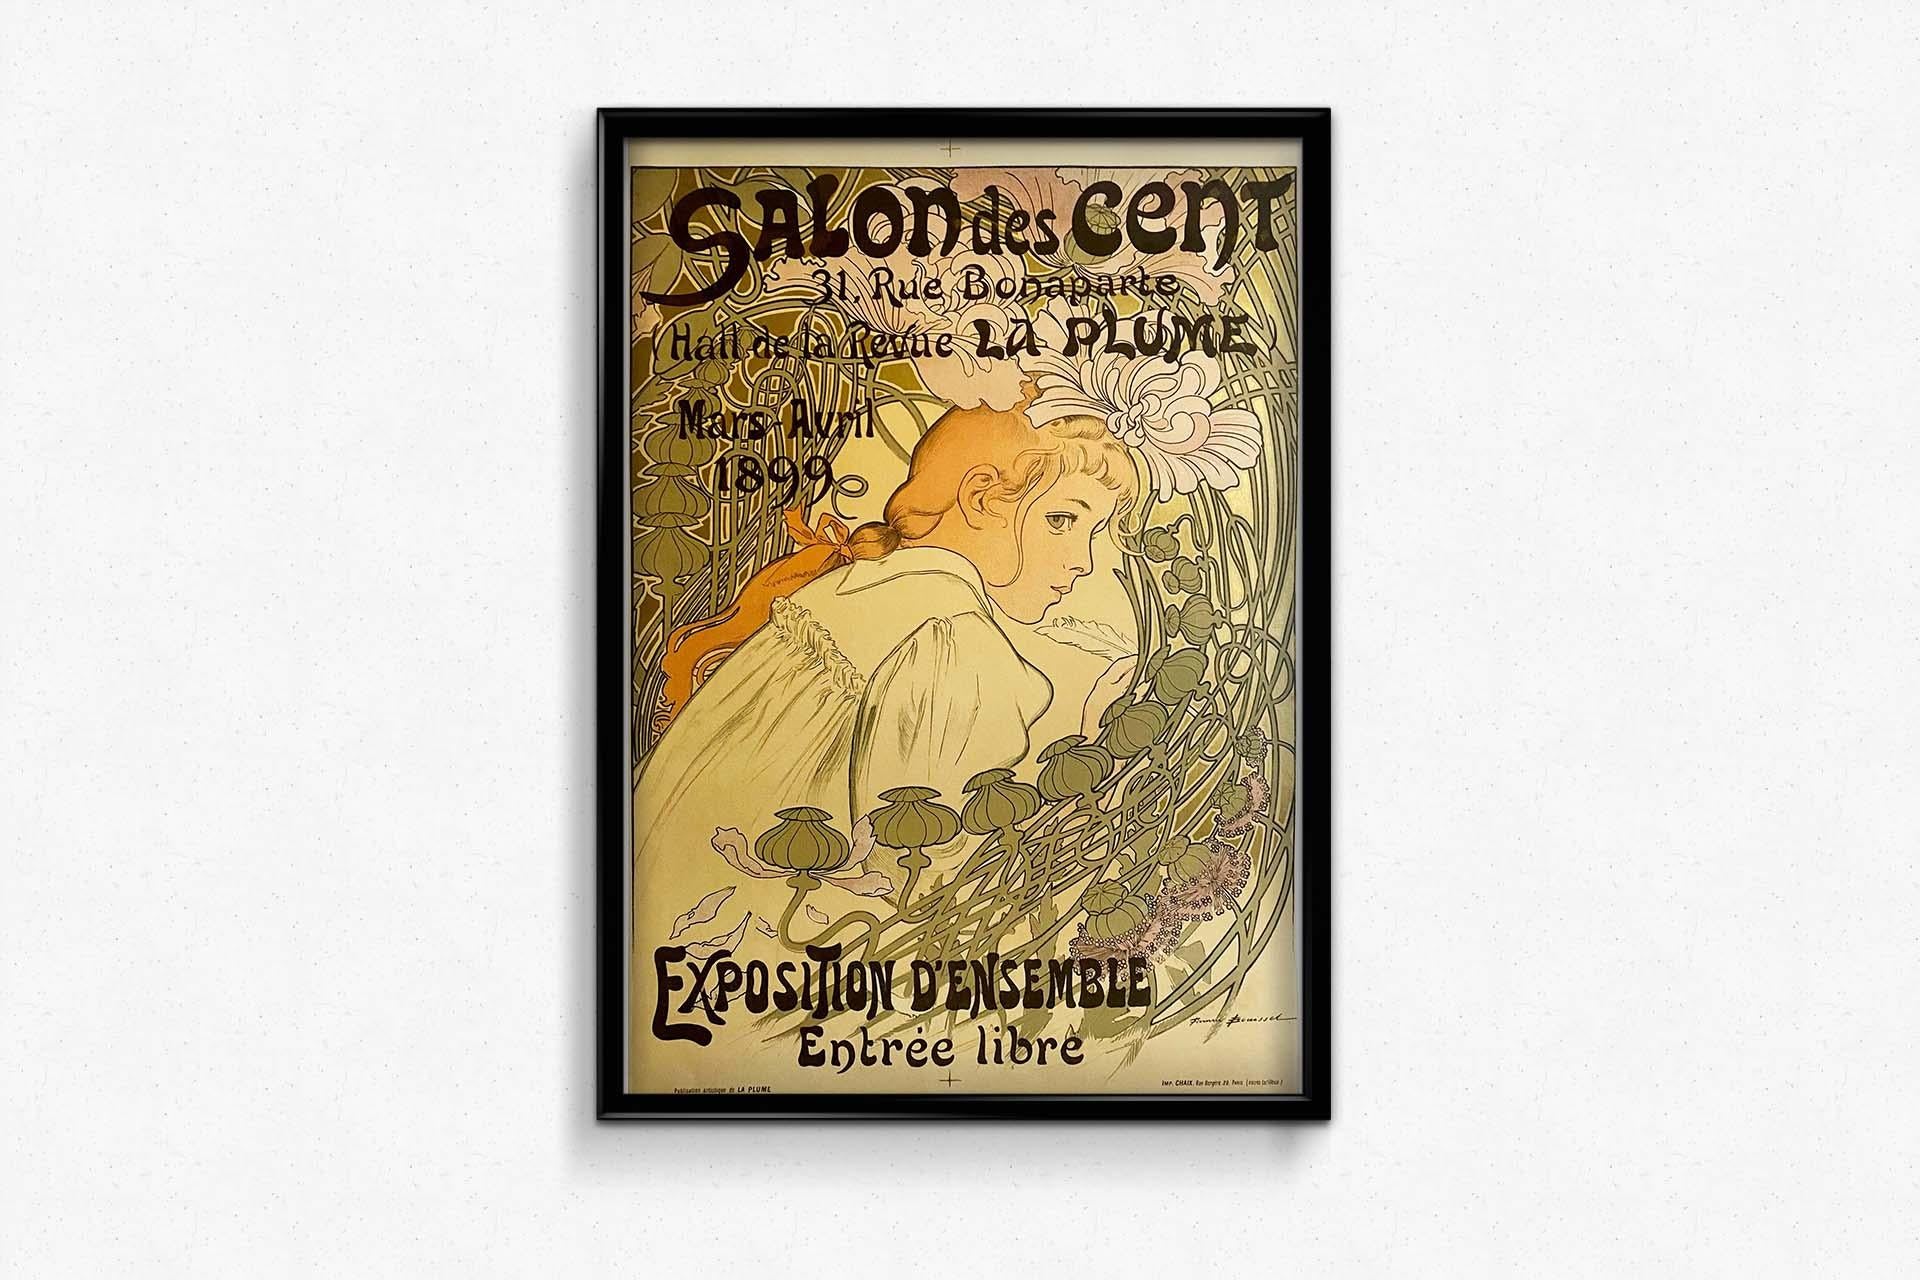  1899 Original Art Nouveau poster by Firmin Bouisset for the Salon des cent For Sale 1